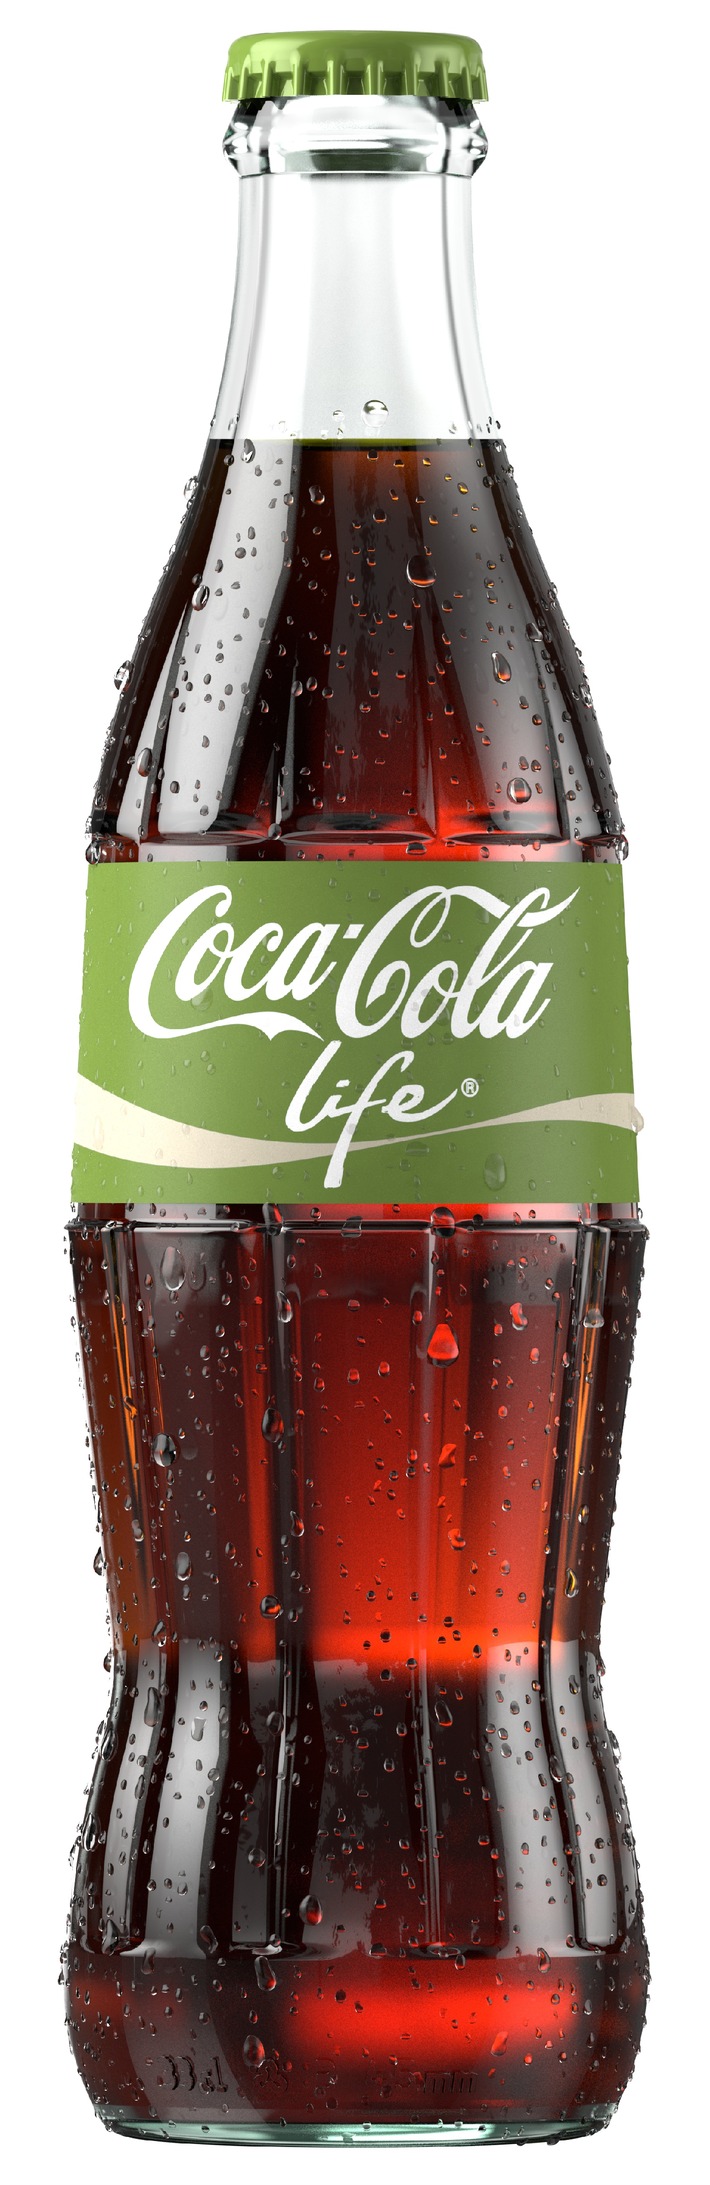 Naturellement délicieux: Coca-Cola Life arrive en Suisse